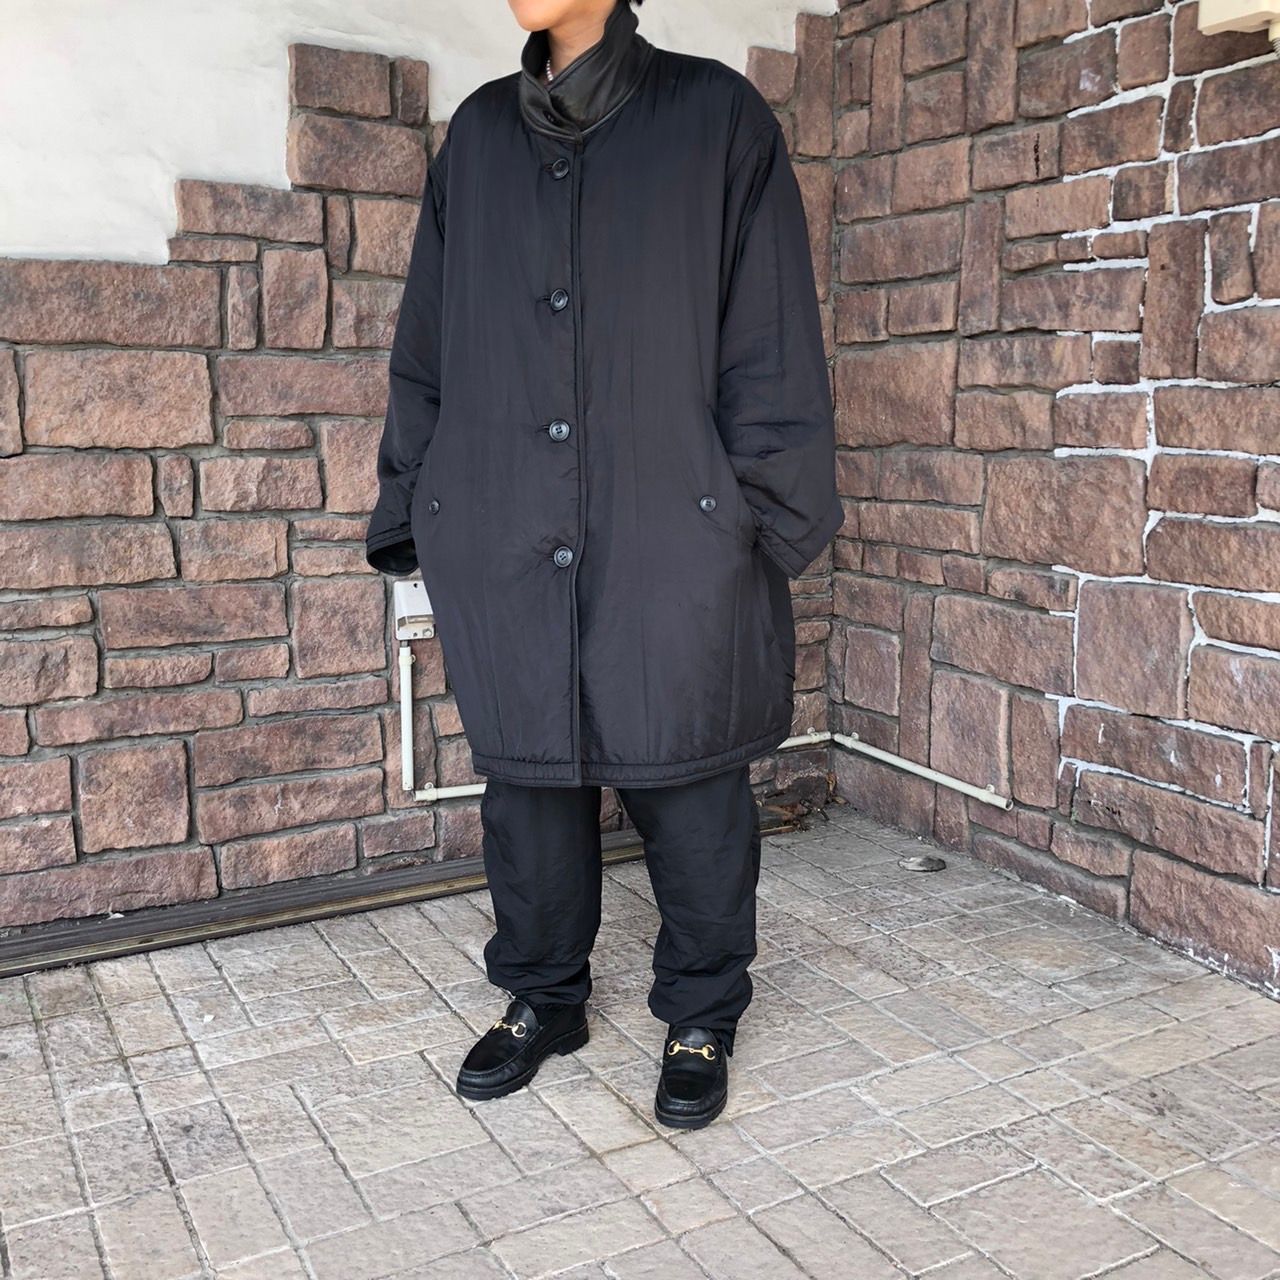 i.s. ISSEY MIYAKE(アイエスイッセイミヤケ) 88's ”is”logo reversible leather  coat/リバーシブルレザーコート 9(XLサイズ程度) ブラック IS TSUMORI CHISATO DESIGN